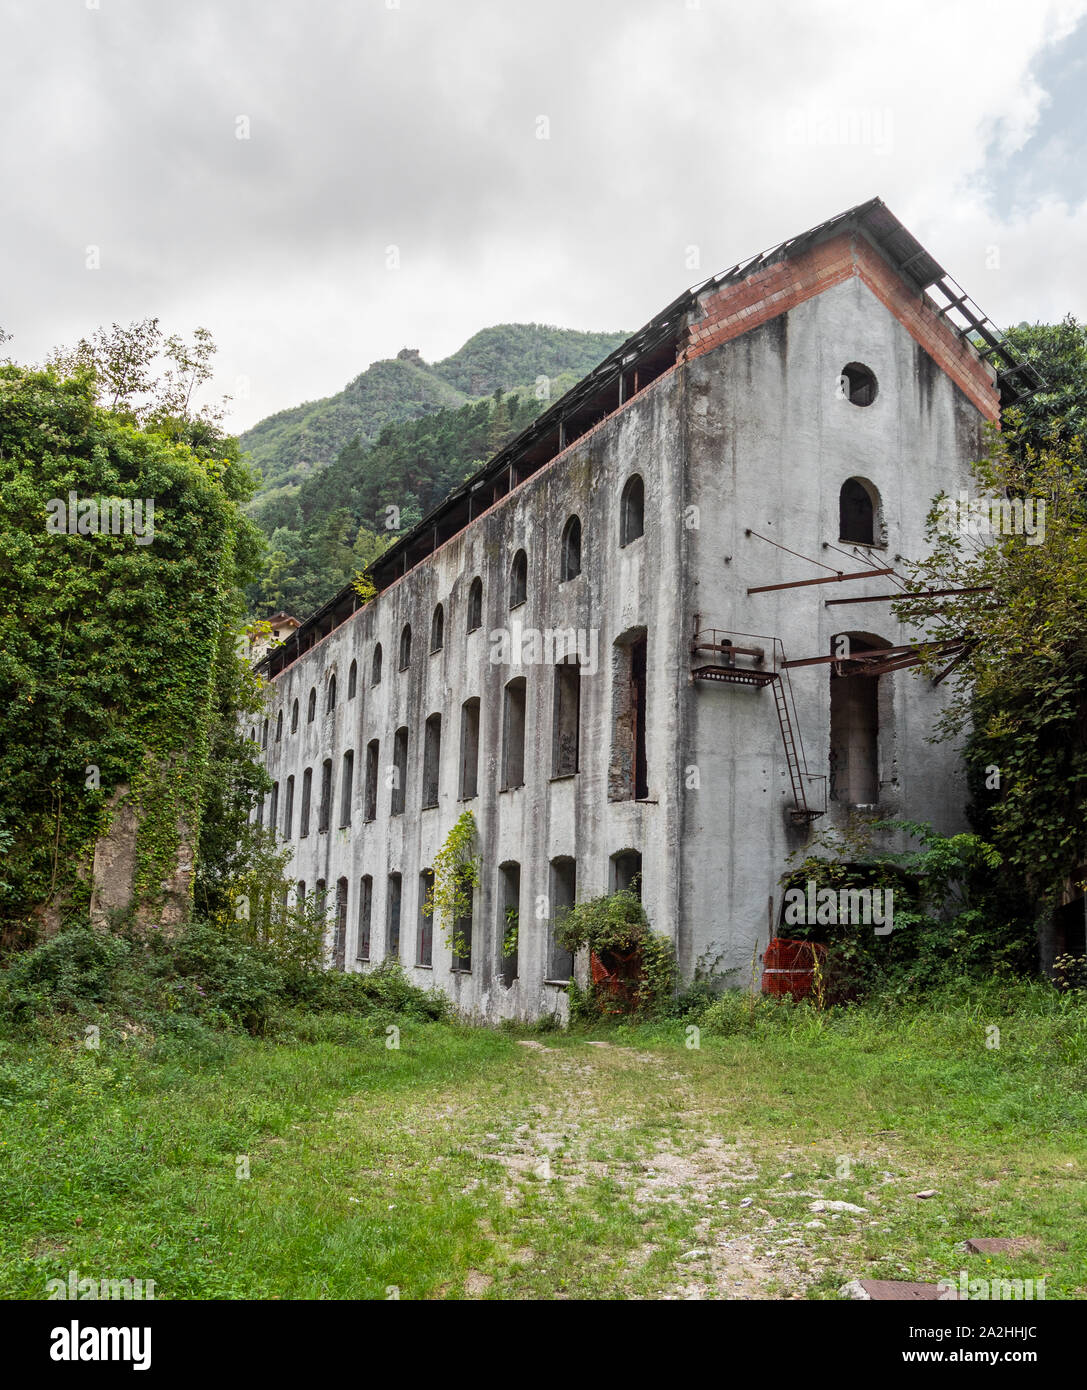 Abbandonato edificio industriale nel villaggio di Forno della provincia di  Massa Carrara, Italia. Di interesse storico Foto stock - Alamy